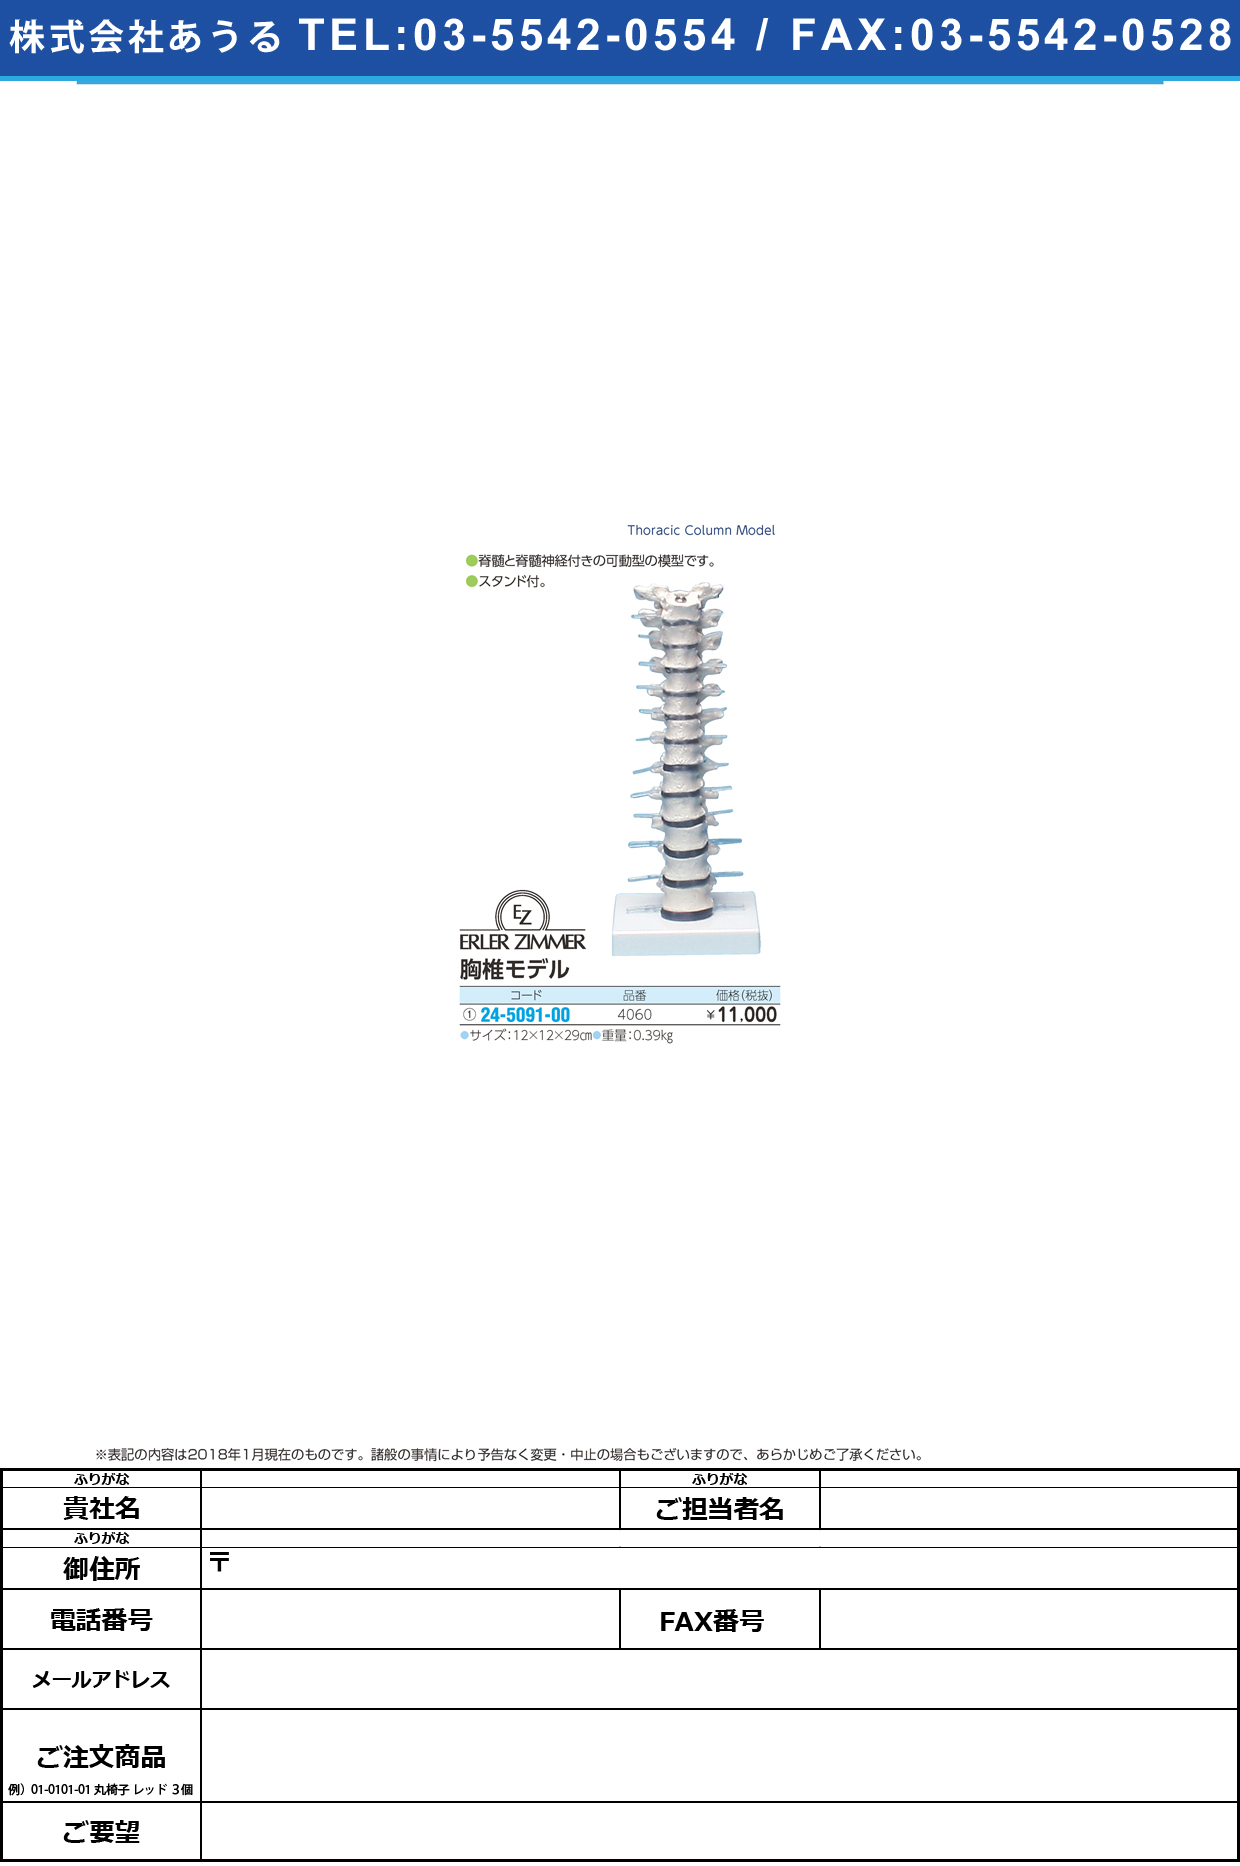 (24-5091-00)胸椎モデル 4060 ｷｮｳﾂｲﾓﾃﾞﾙ(エルラージーマー社)【1個単位】【2019年カタログ商品】